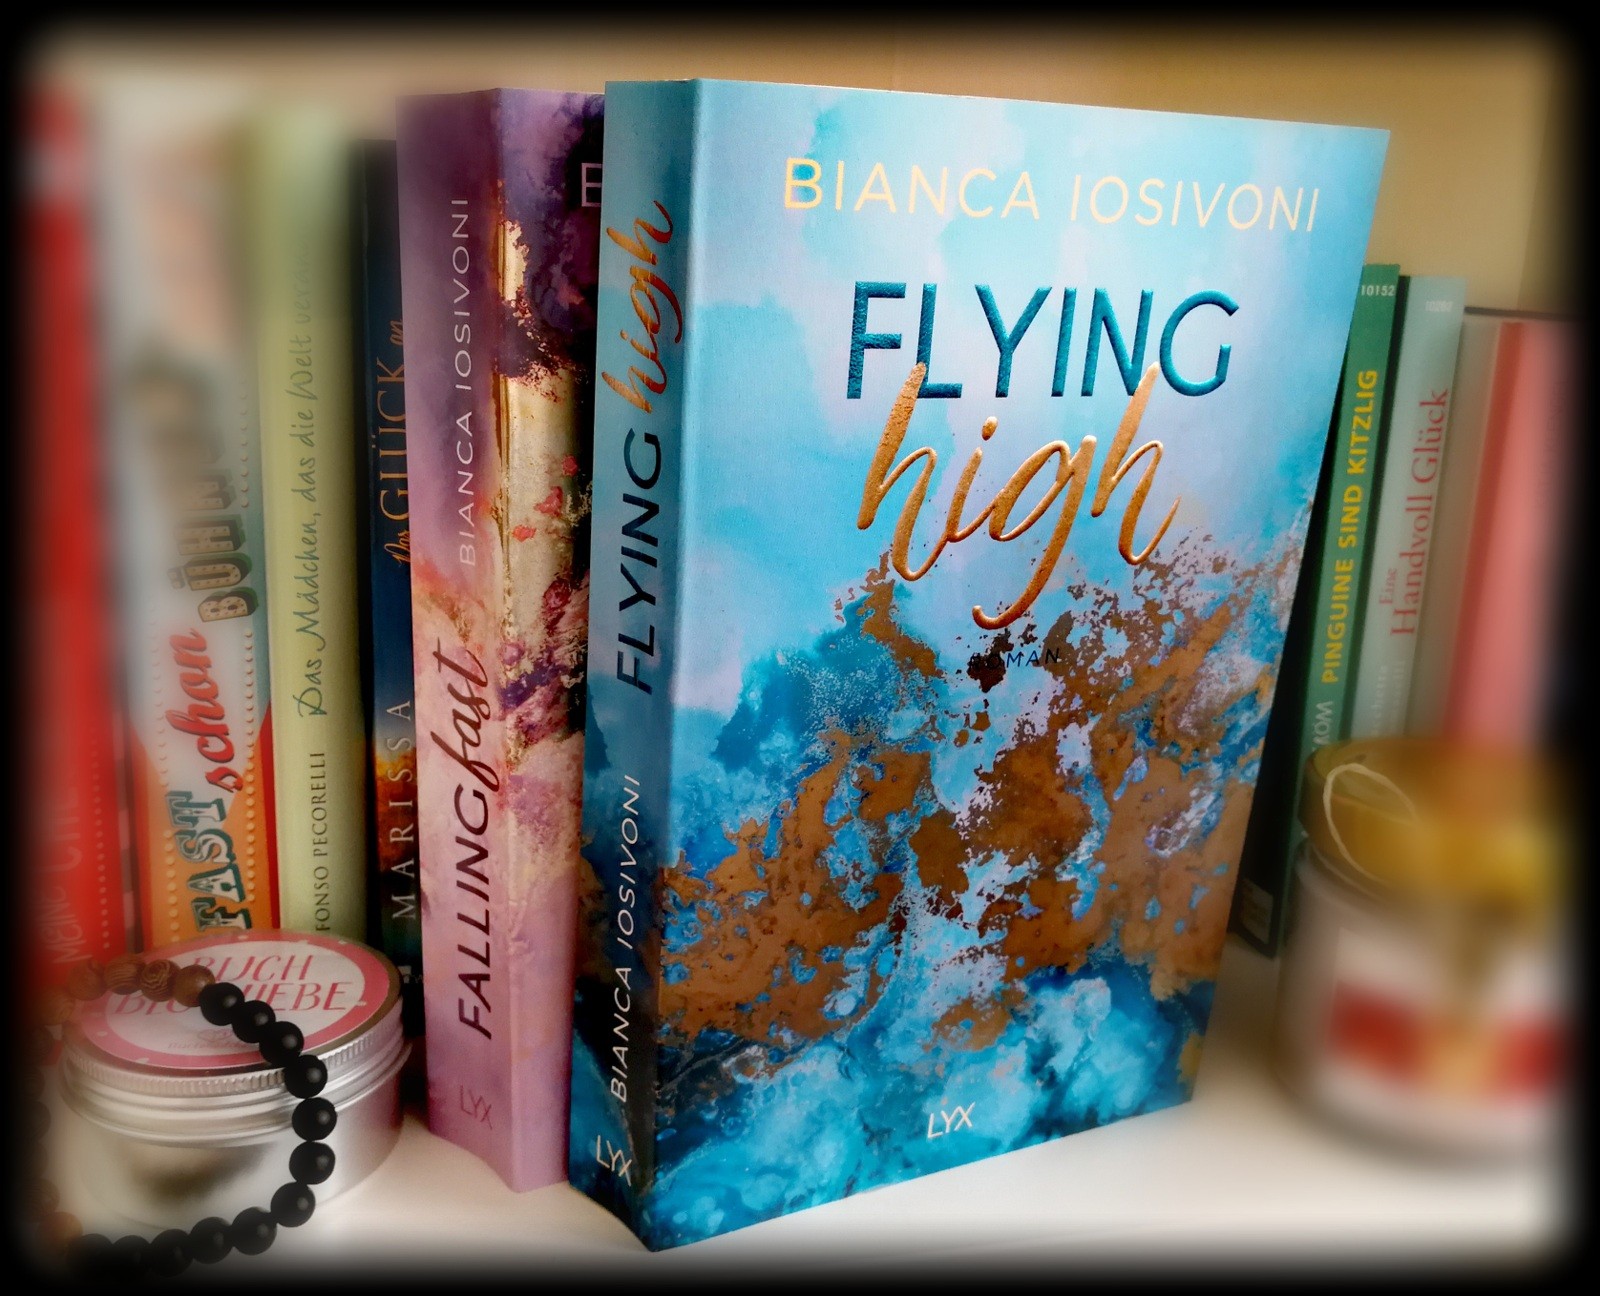 "Flying high" von Bianca Iosivoni - Der Slogan bekommt einen besseren Touch verpasst